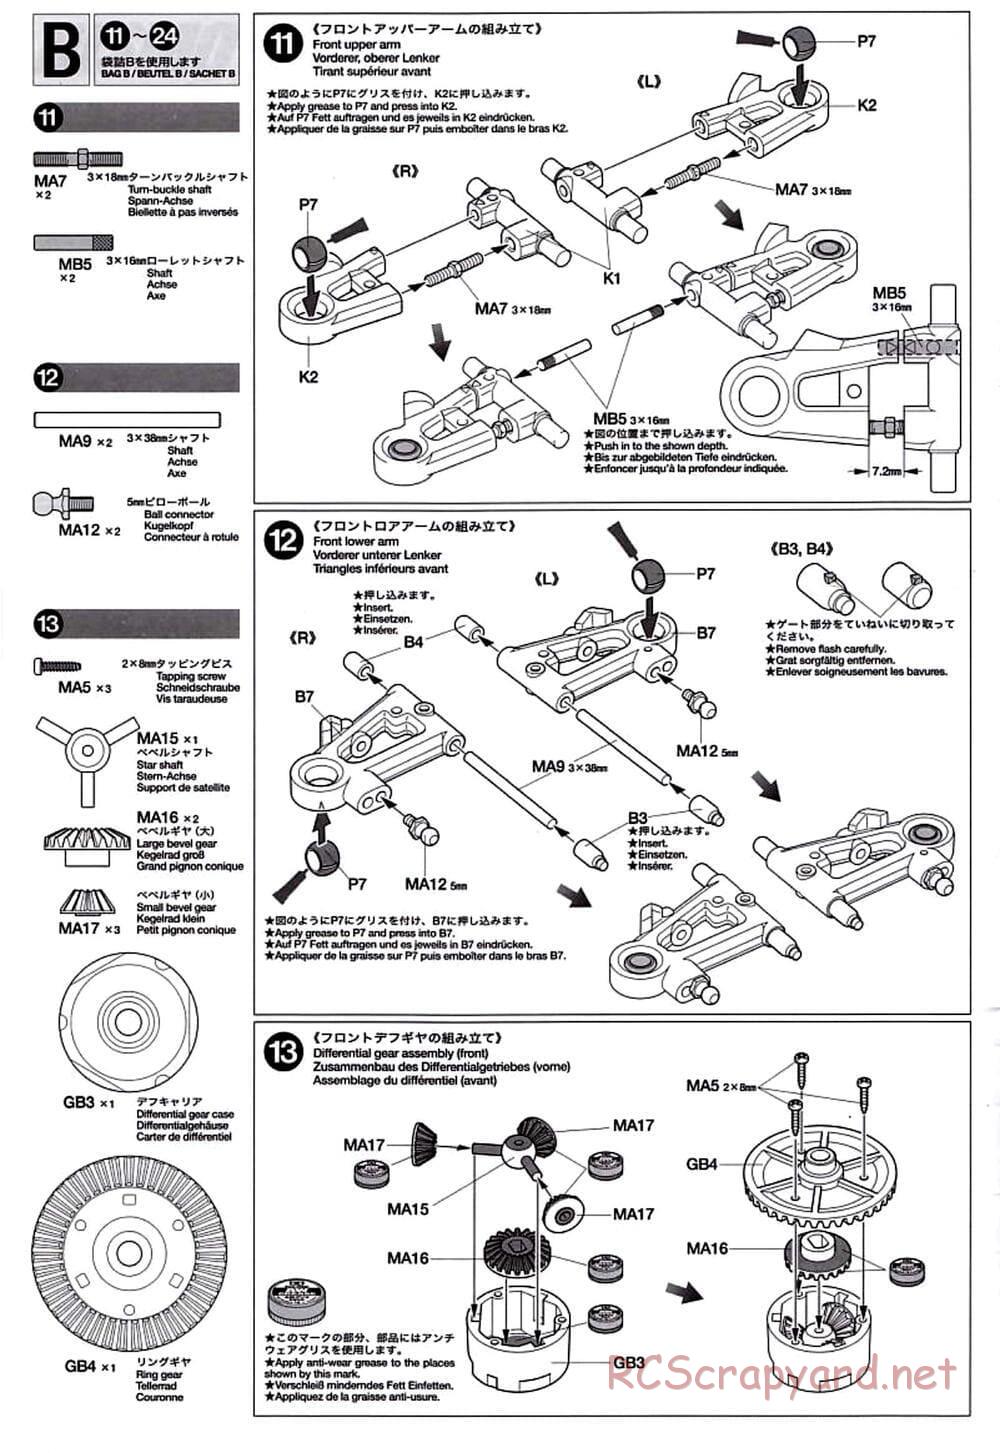 Tamiya - TT-01D Chassis - Manual - Page 8